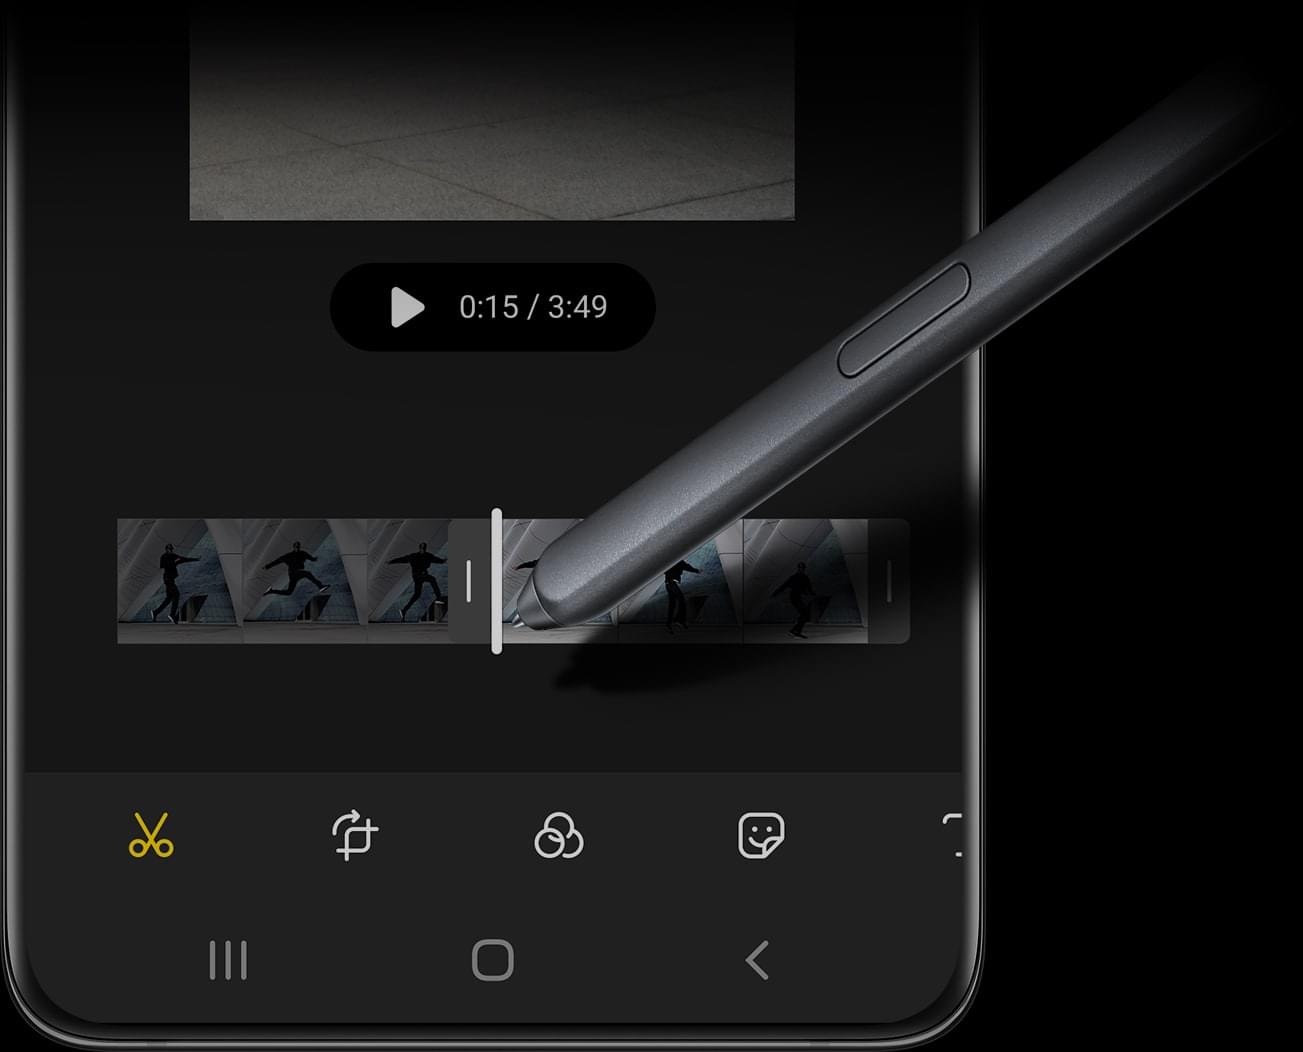 عرض قلم S Pen وهو مستخدم في هاتف Galaxy S21 Ultra 5G حيث تعرض شاشته واجهة المستخدم الغرافيكية لخاصية تحرير الفيديو.